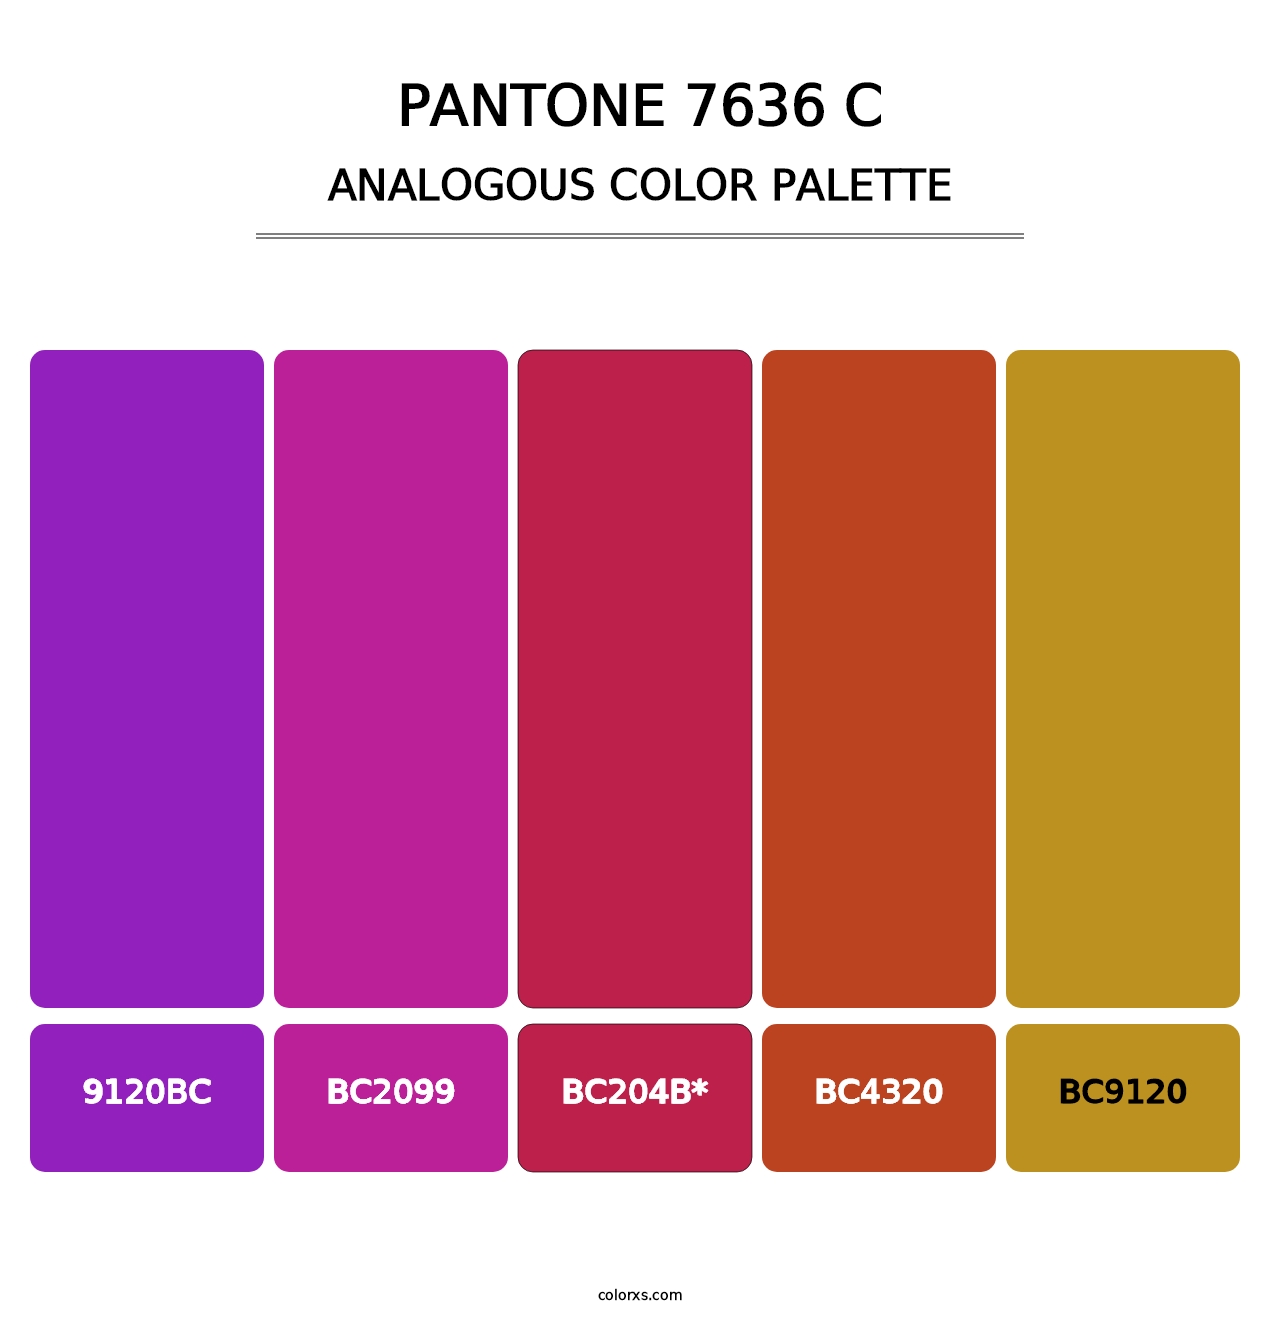 PANTONE 7636 C - Analogous Color Palette